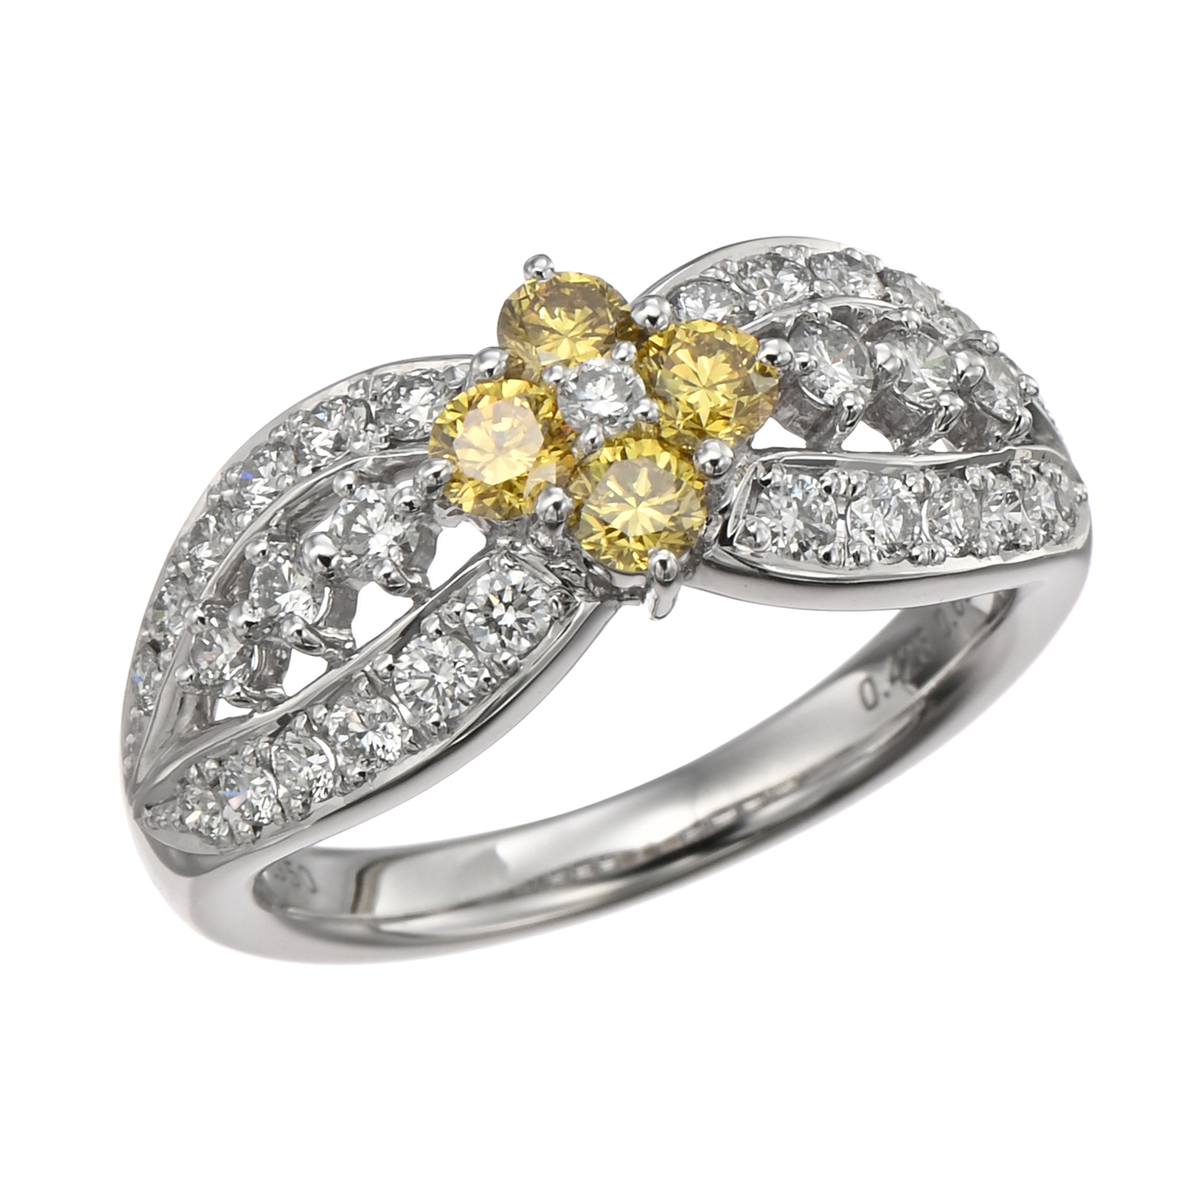 超高品質で人気の ダイヤモンド リング pt950 ファンシーライトイエロー - リング(指輪)